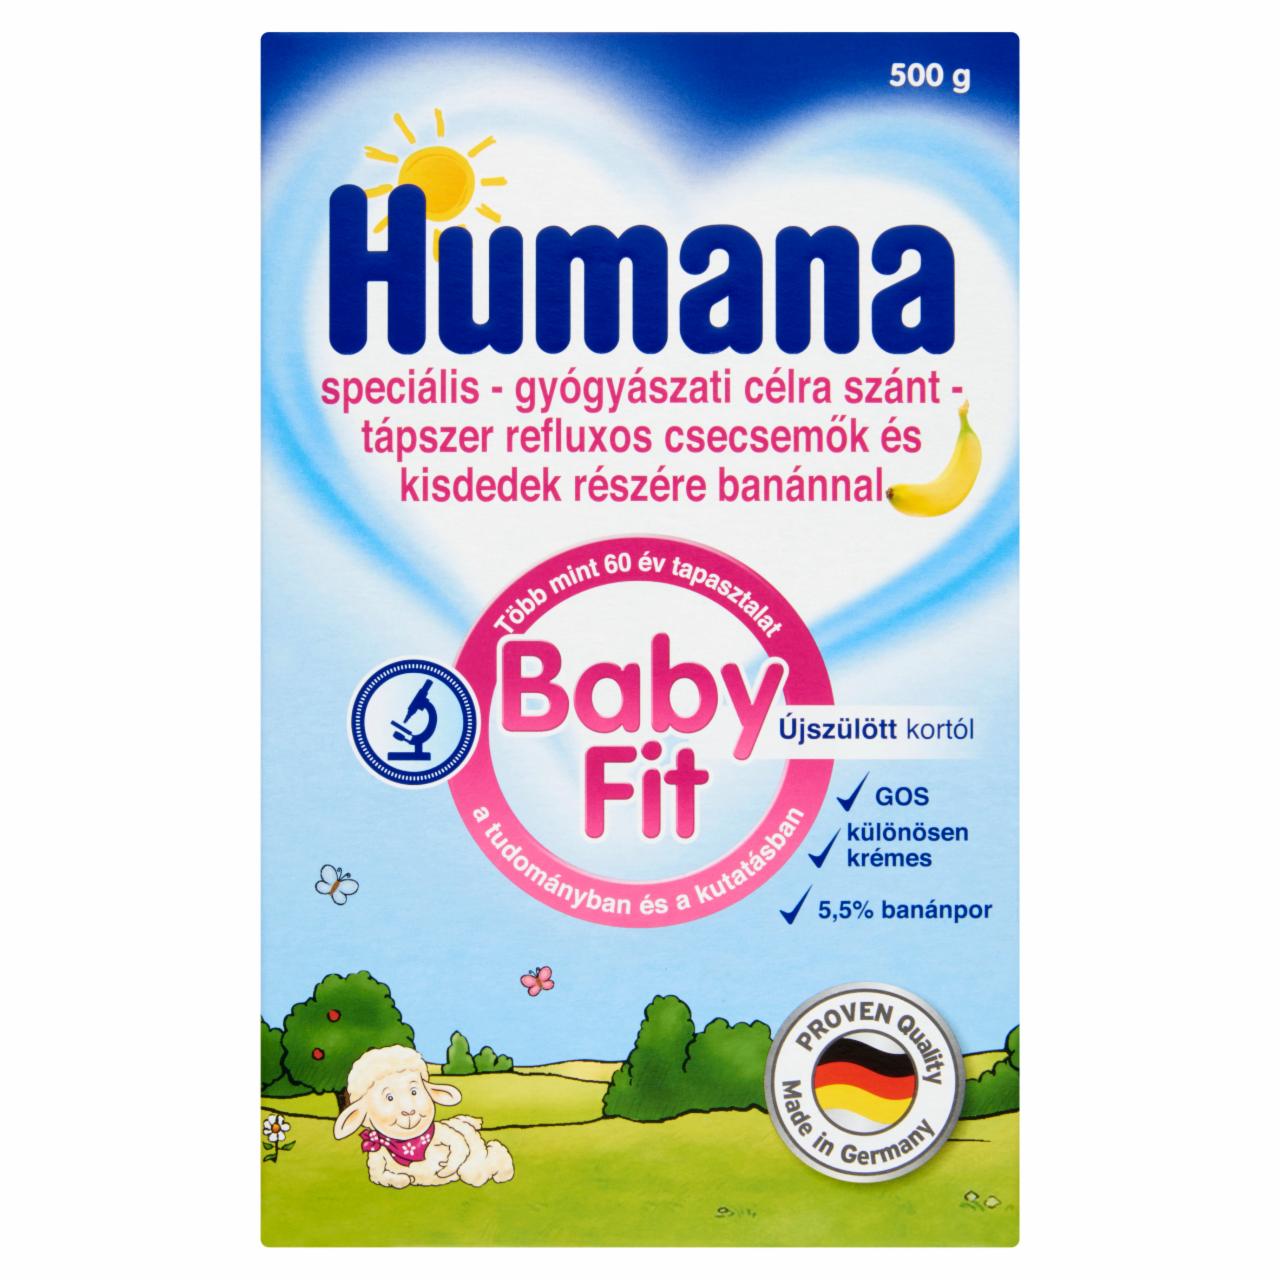 Képek - Humana Baby Fit speciális tápszer refluxos csecsemők és kisdedek részére banánnal 500 g